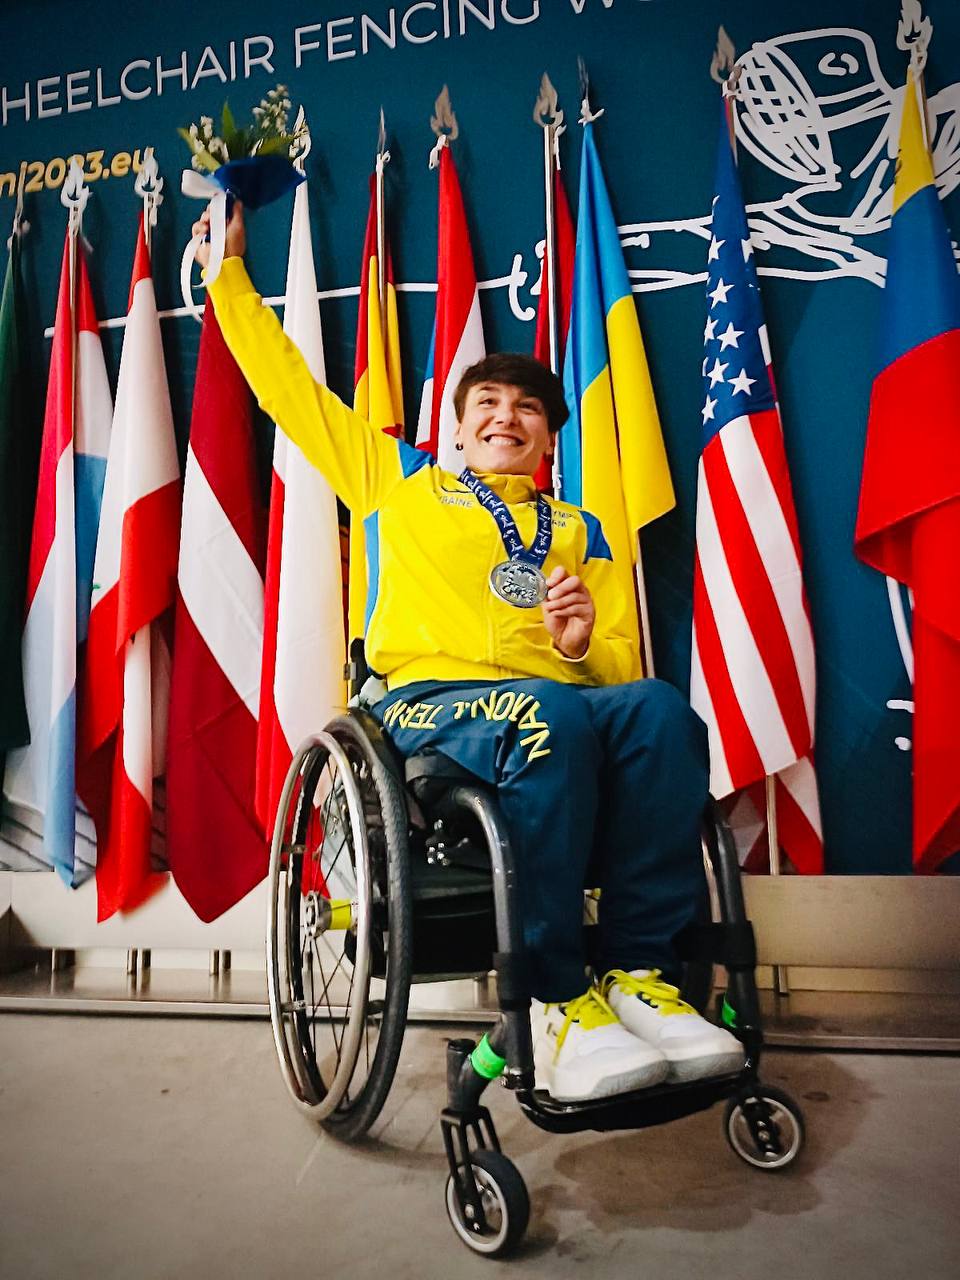 Закарпатка Надія Дьолог здобула "срібло" на Чемпіонаті світу з фехтування на візках (ФОТО)